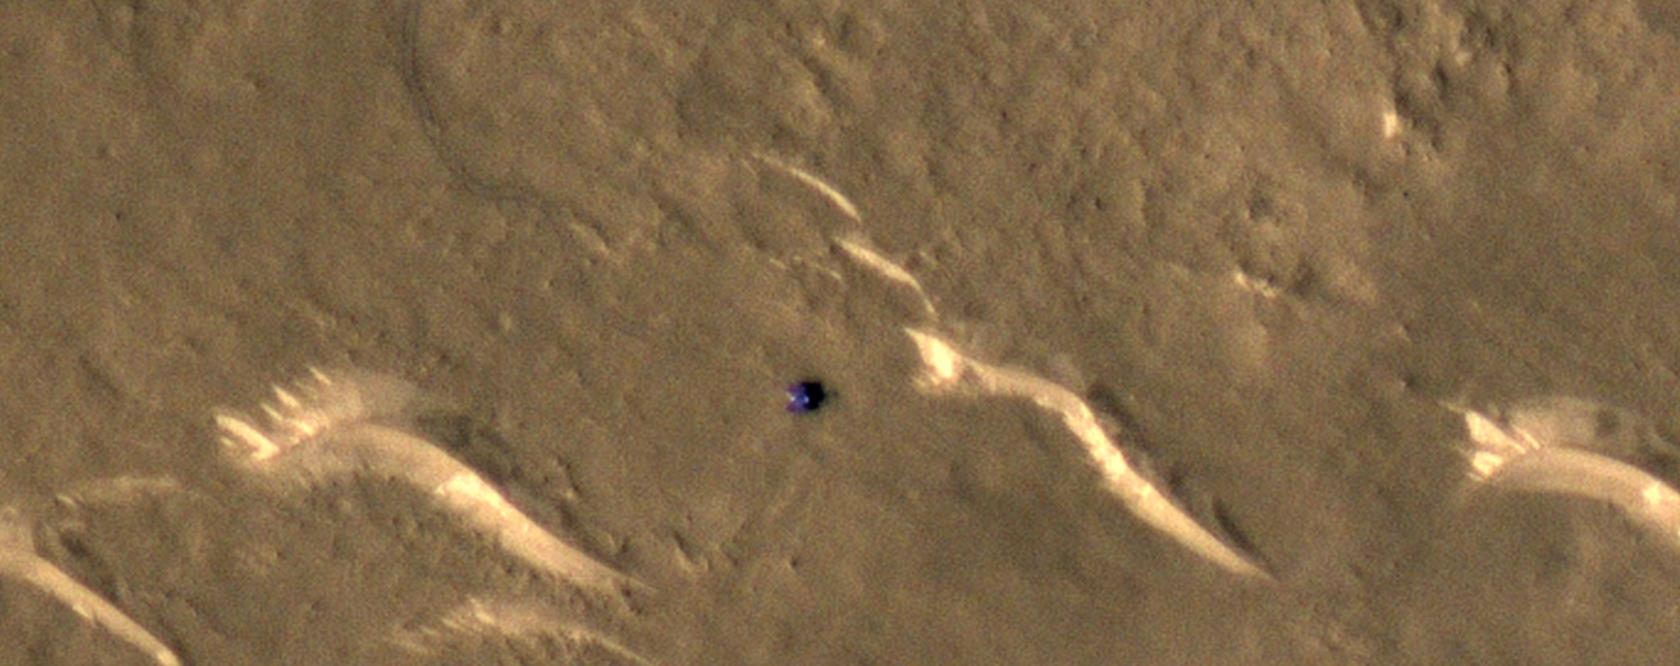 NASA / JPL / UArizona